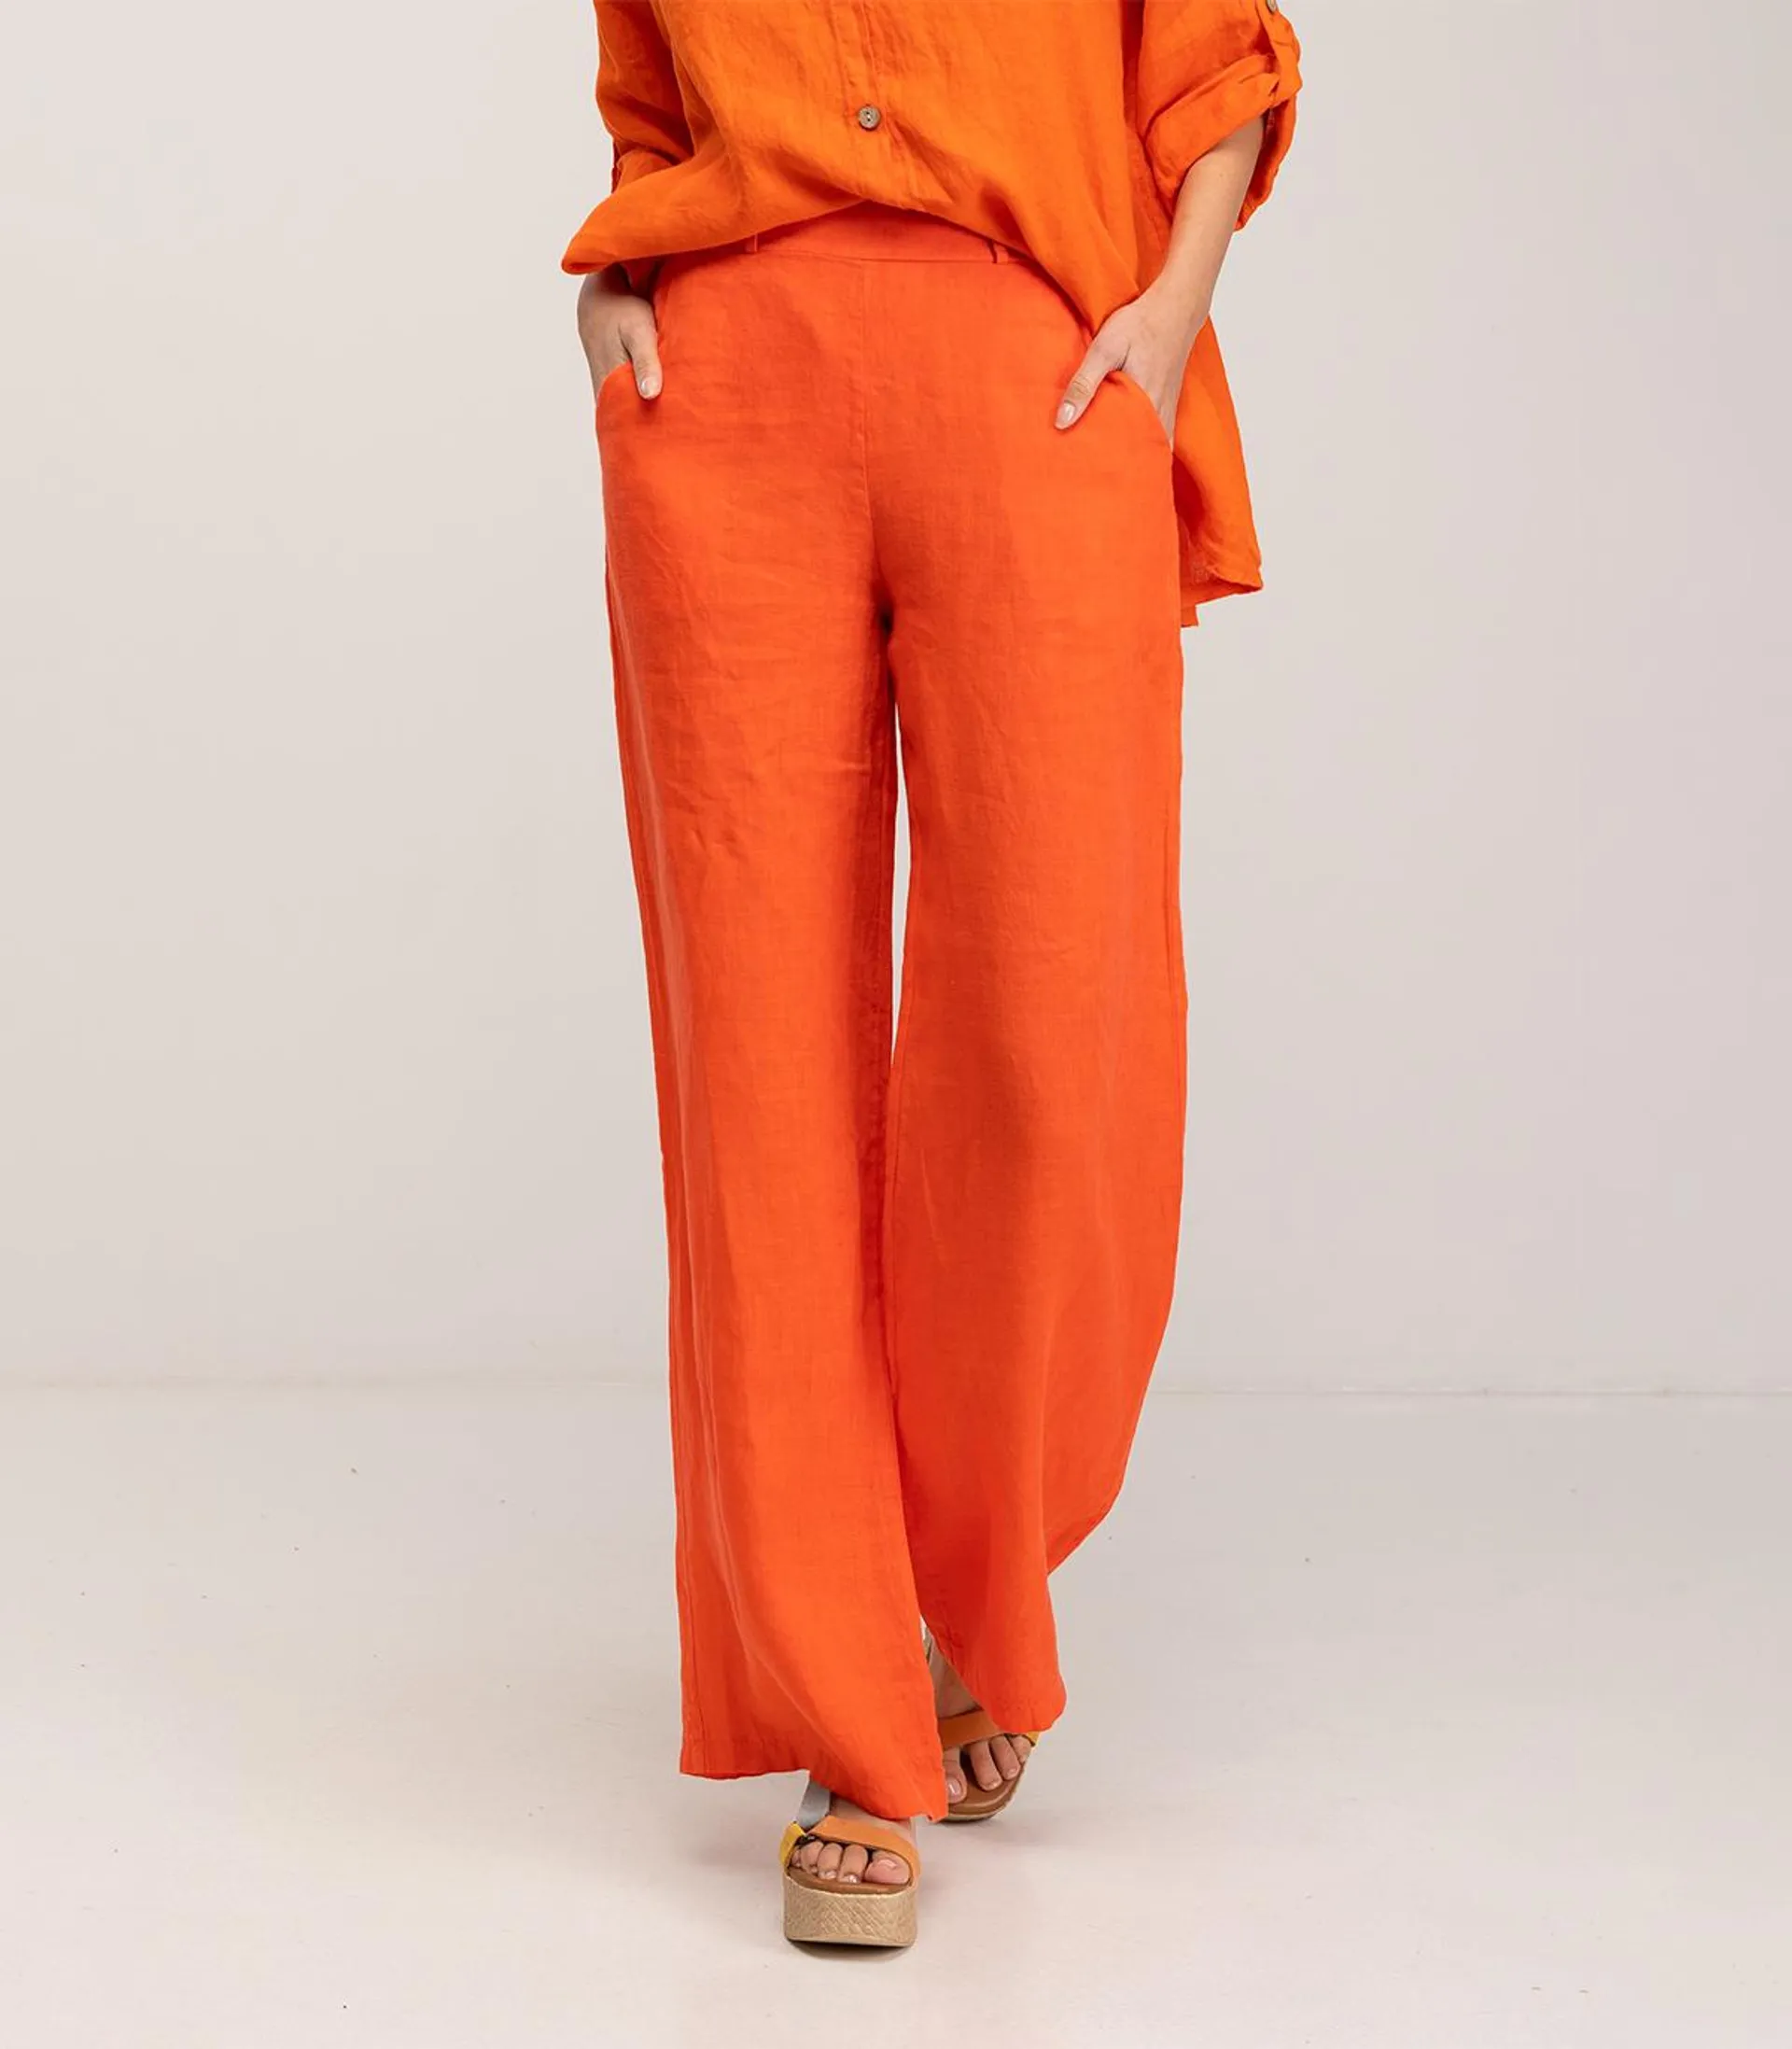 Pantalon de vestir ancho de lino con cintura elástica, bolsillos y tiro alto Orange